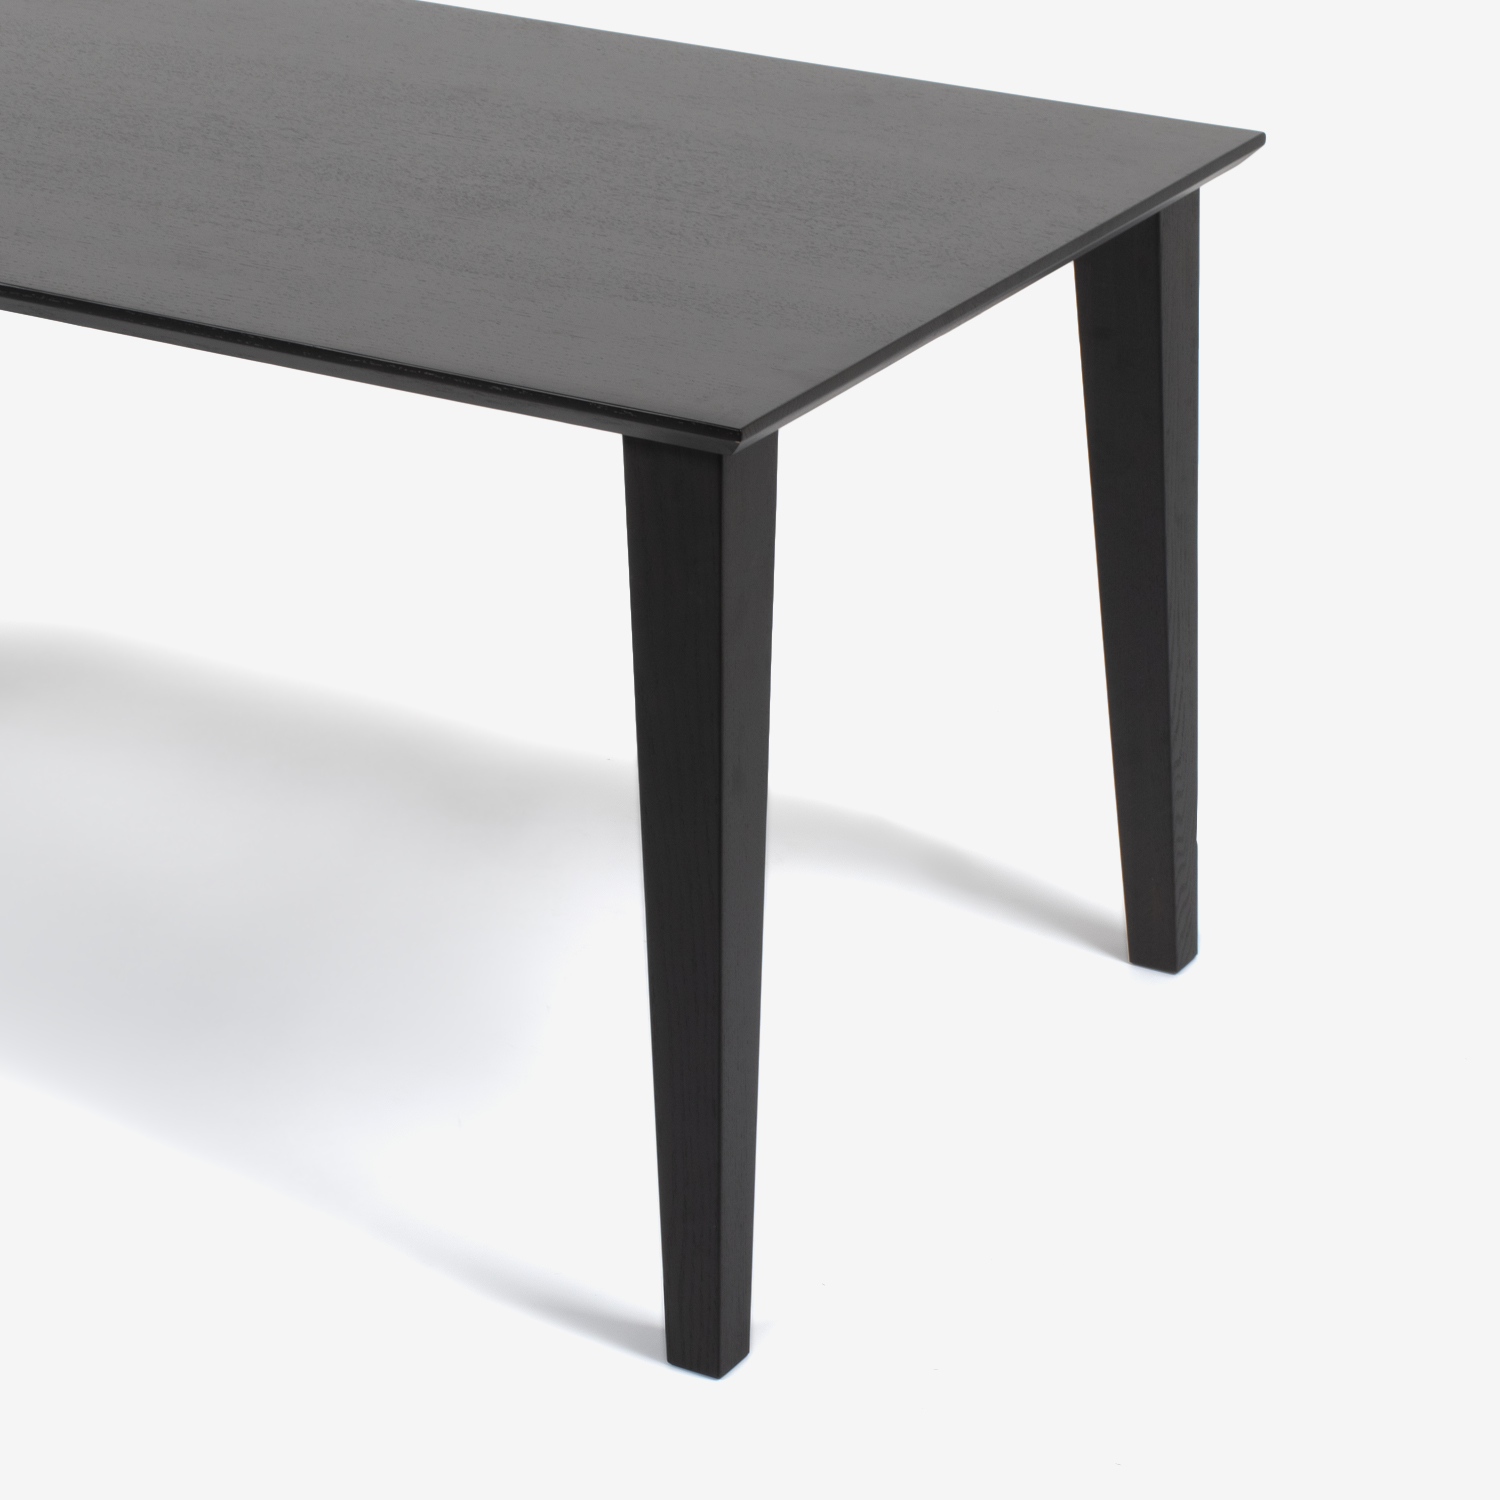 ダイニングテーブル「フィル3」天板角型 レッドオーク材 ダークブラウン色 全4サイズ